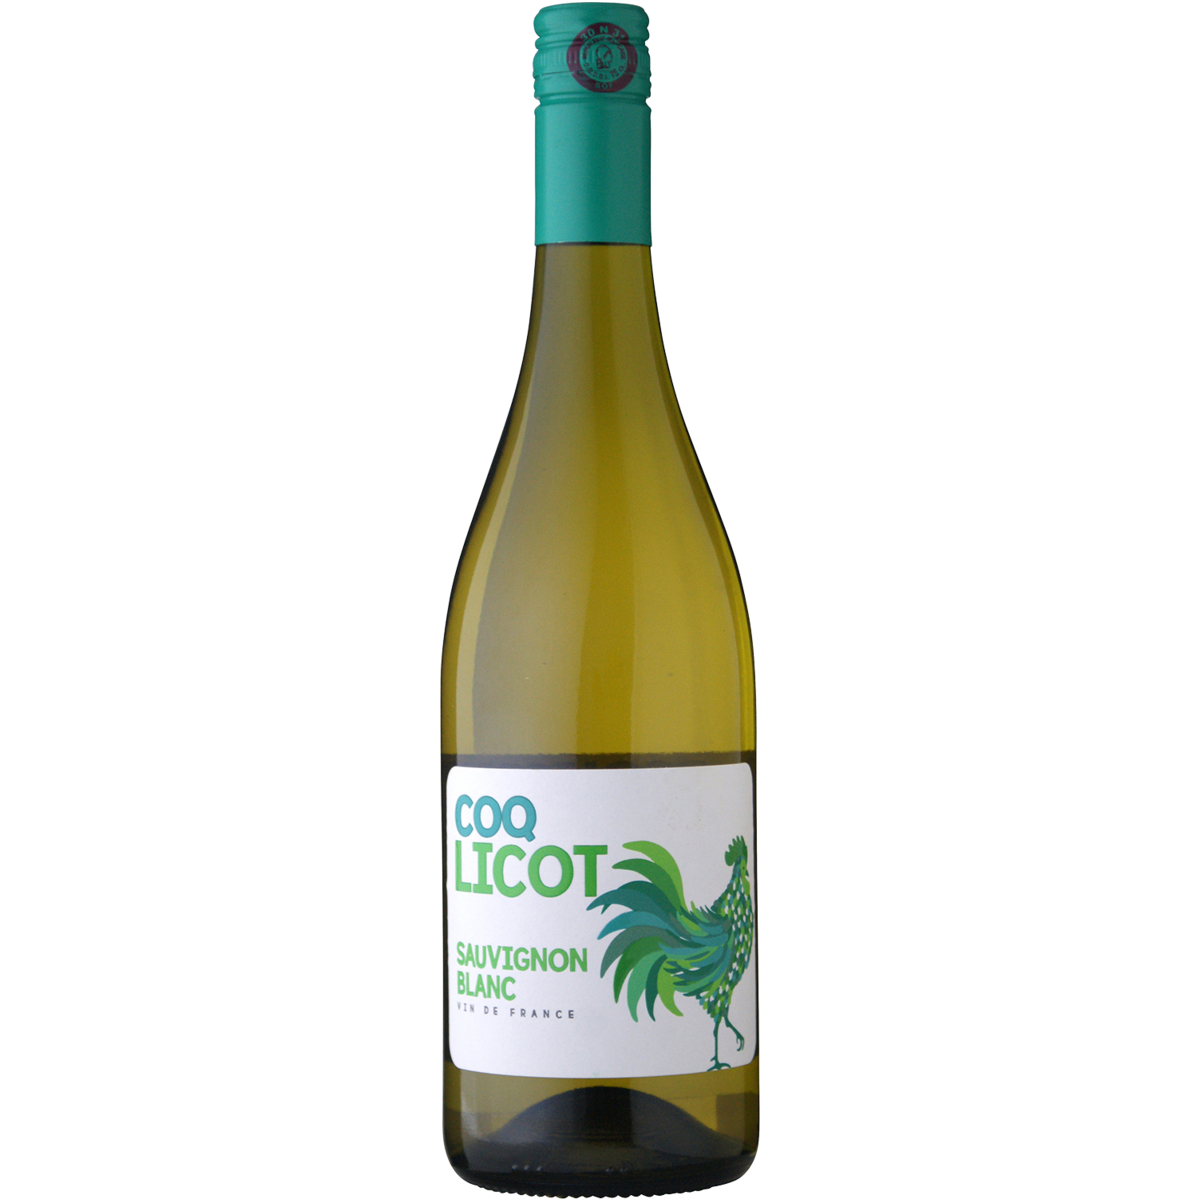 COQ LICOT Sauvignon Blanc Vin de France